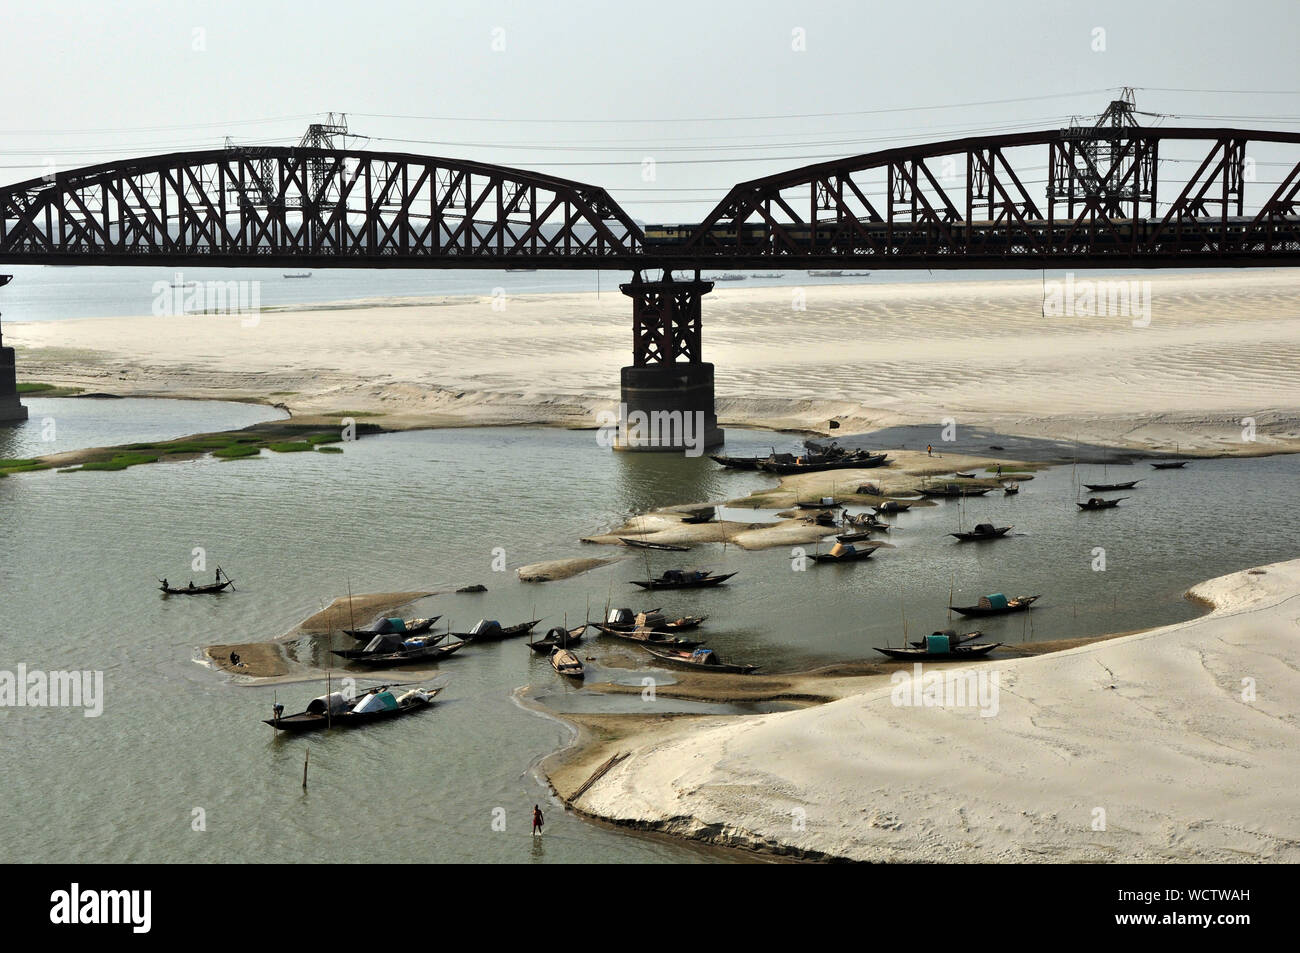 Die 1,8 km lange Hardinge Brücke über den Fluss, auf die Trocknung Padma Dhaka - Kolkata Bahnstrecke. Die Brücke verbindet Pakshi und Bheramara Stationen auf Breitspur Eisenbahn, aus dem südwestlichen Division von Khulna zu Parbatipur im nördlichen Bereich der Rangpur. Die Brücke wurde 1912 von dem britischen Ingenieur Sir Robert Gailes erbaut und nach Herrn Hardinge, der Vizekönig von Indien von 1910 bis 1916 benannt. Pakshi, Pabna, Bangladesch. 18. Oktober 2009. Stockfoto